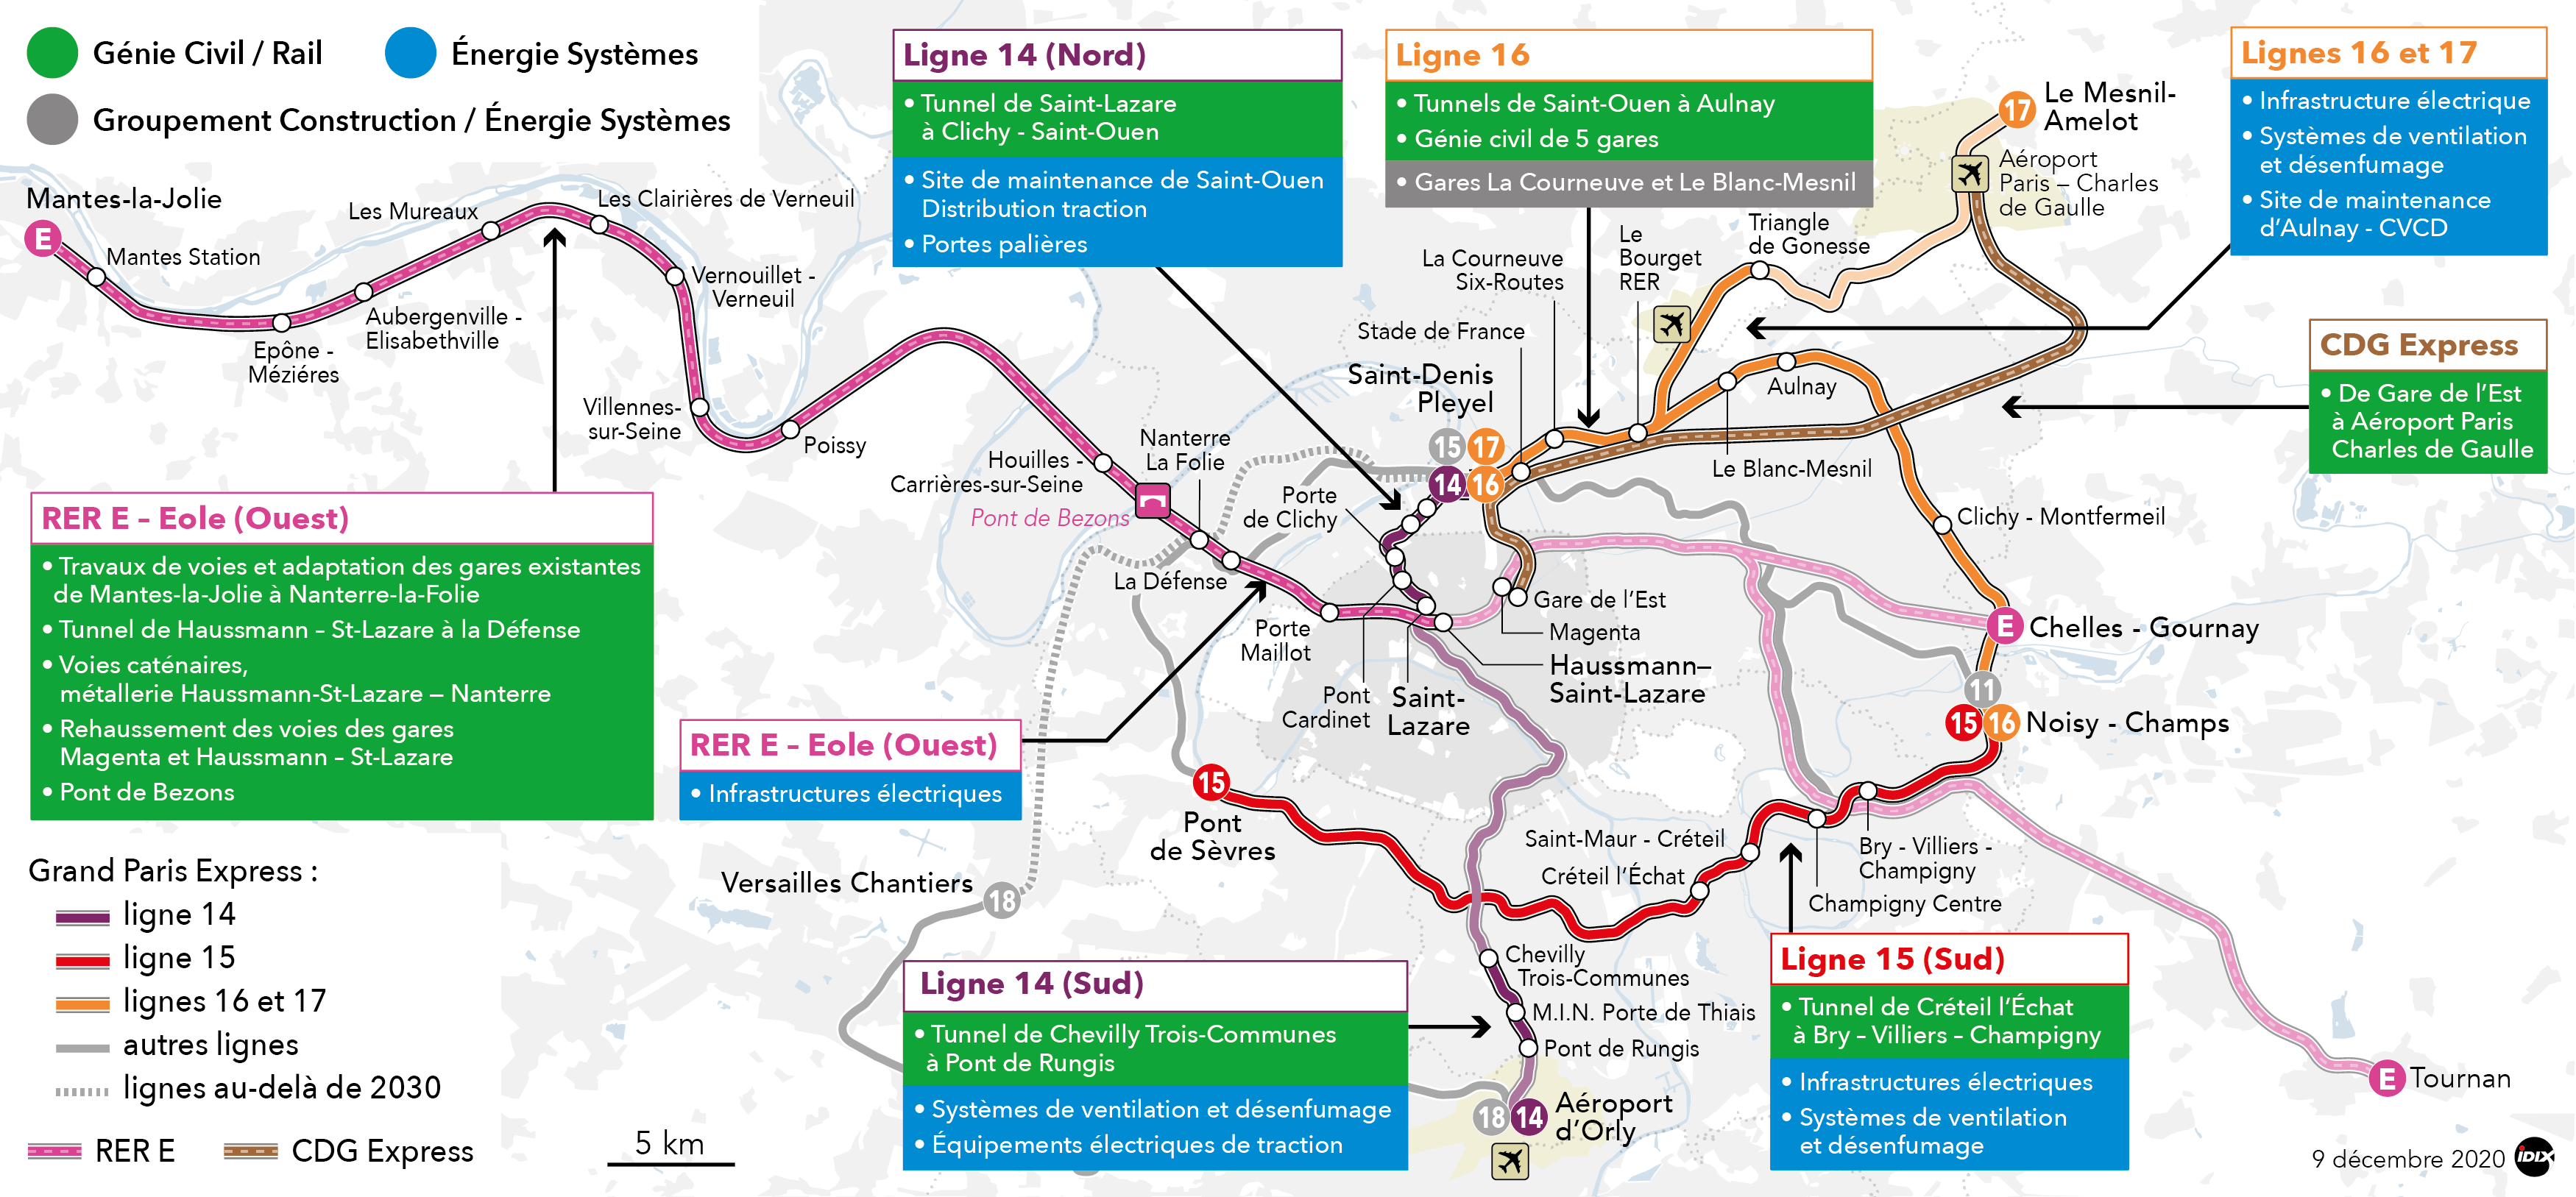 Carte des chantiers Eiffage sur les travaux du Grand Paris